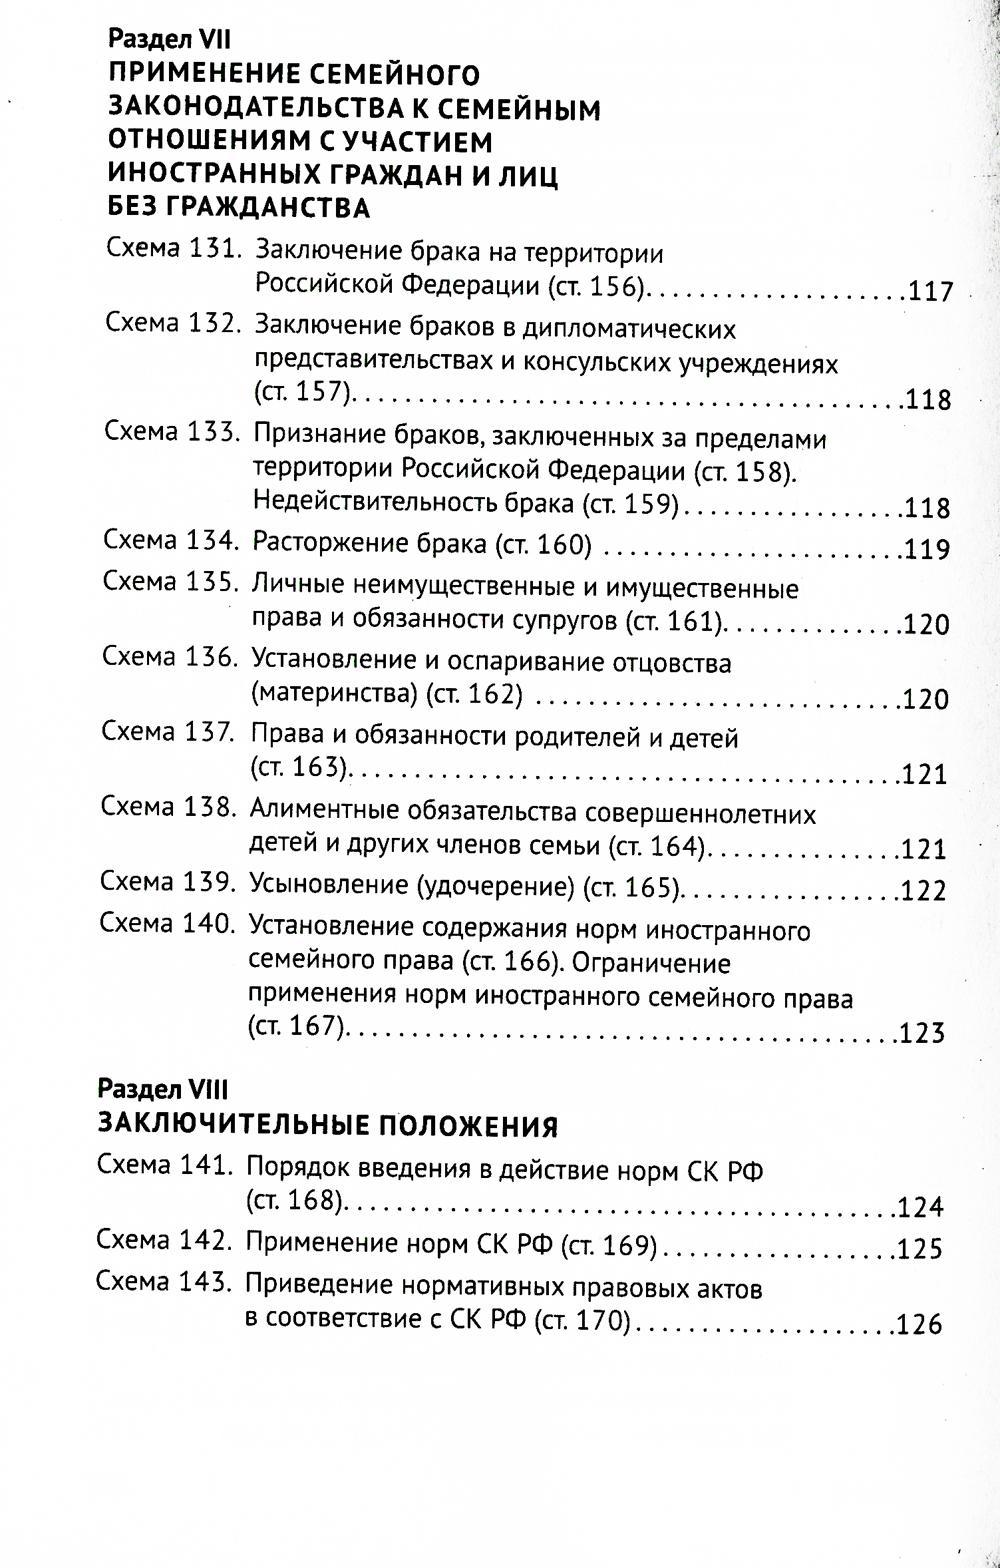 Семейный кодекс РФ в схемах: Учебное пособие. 2-е изд., перераб. и доп